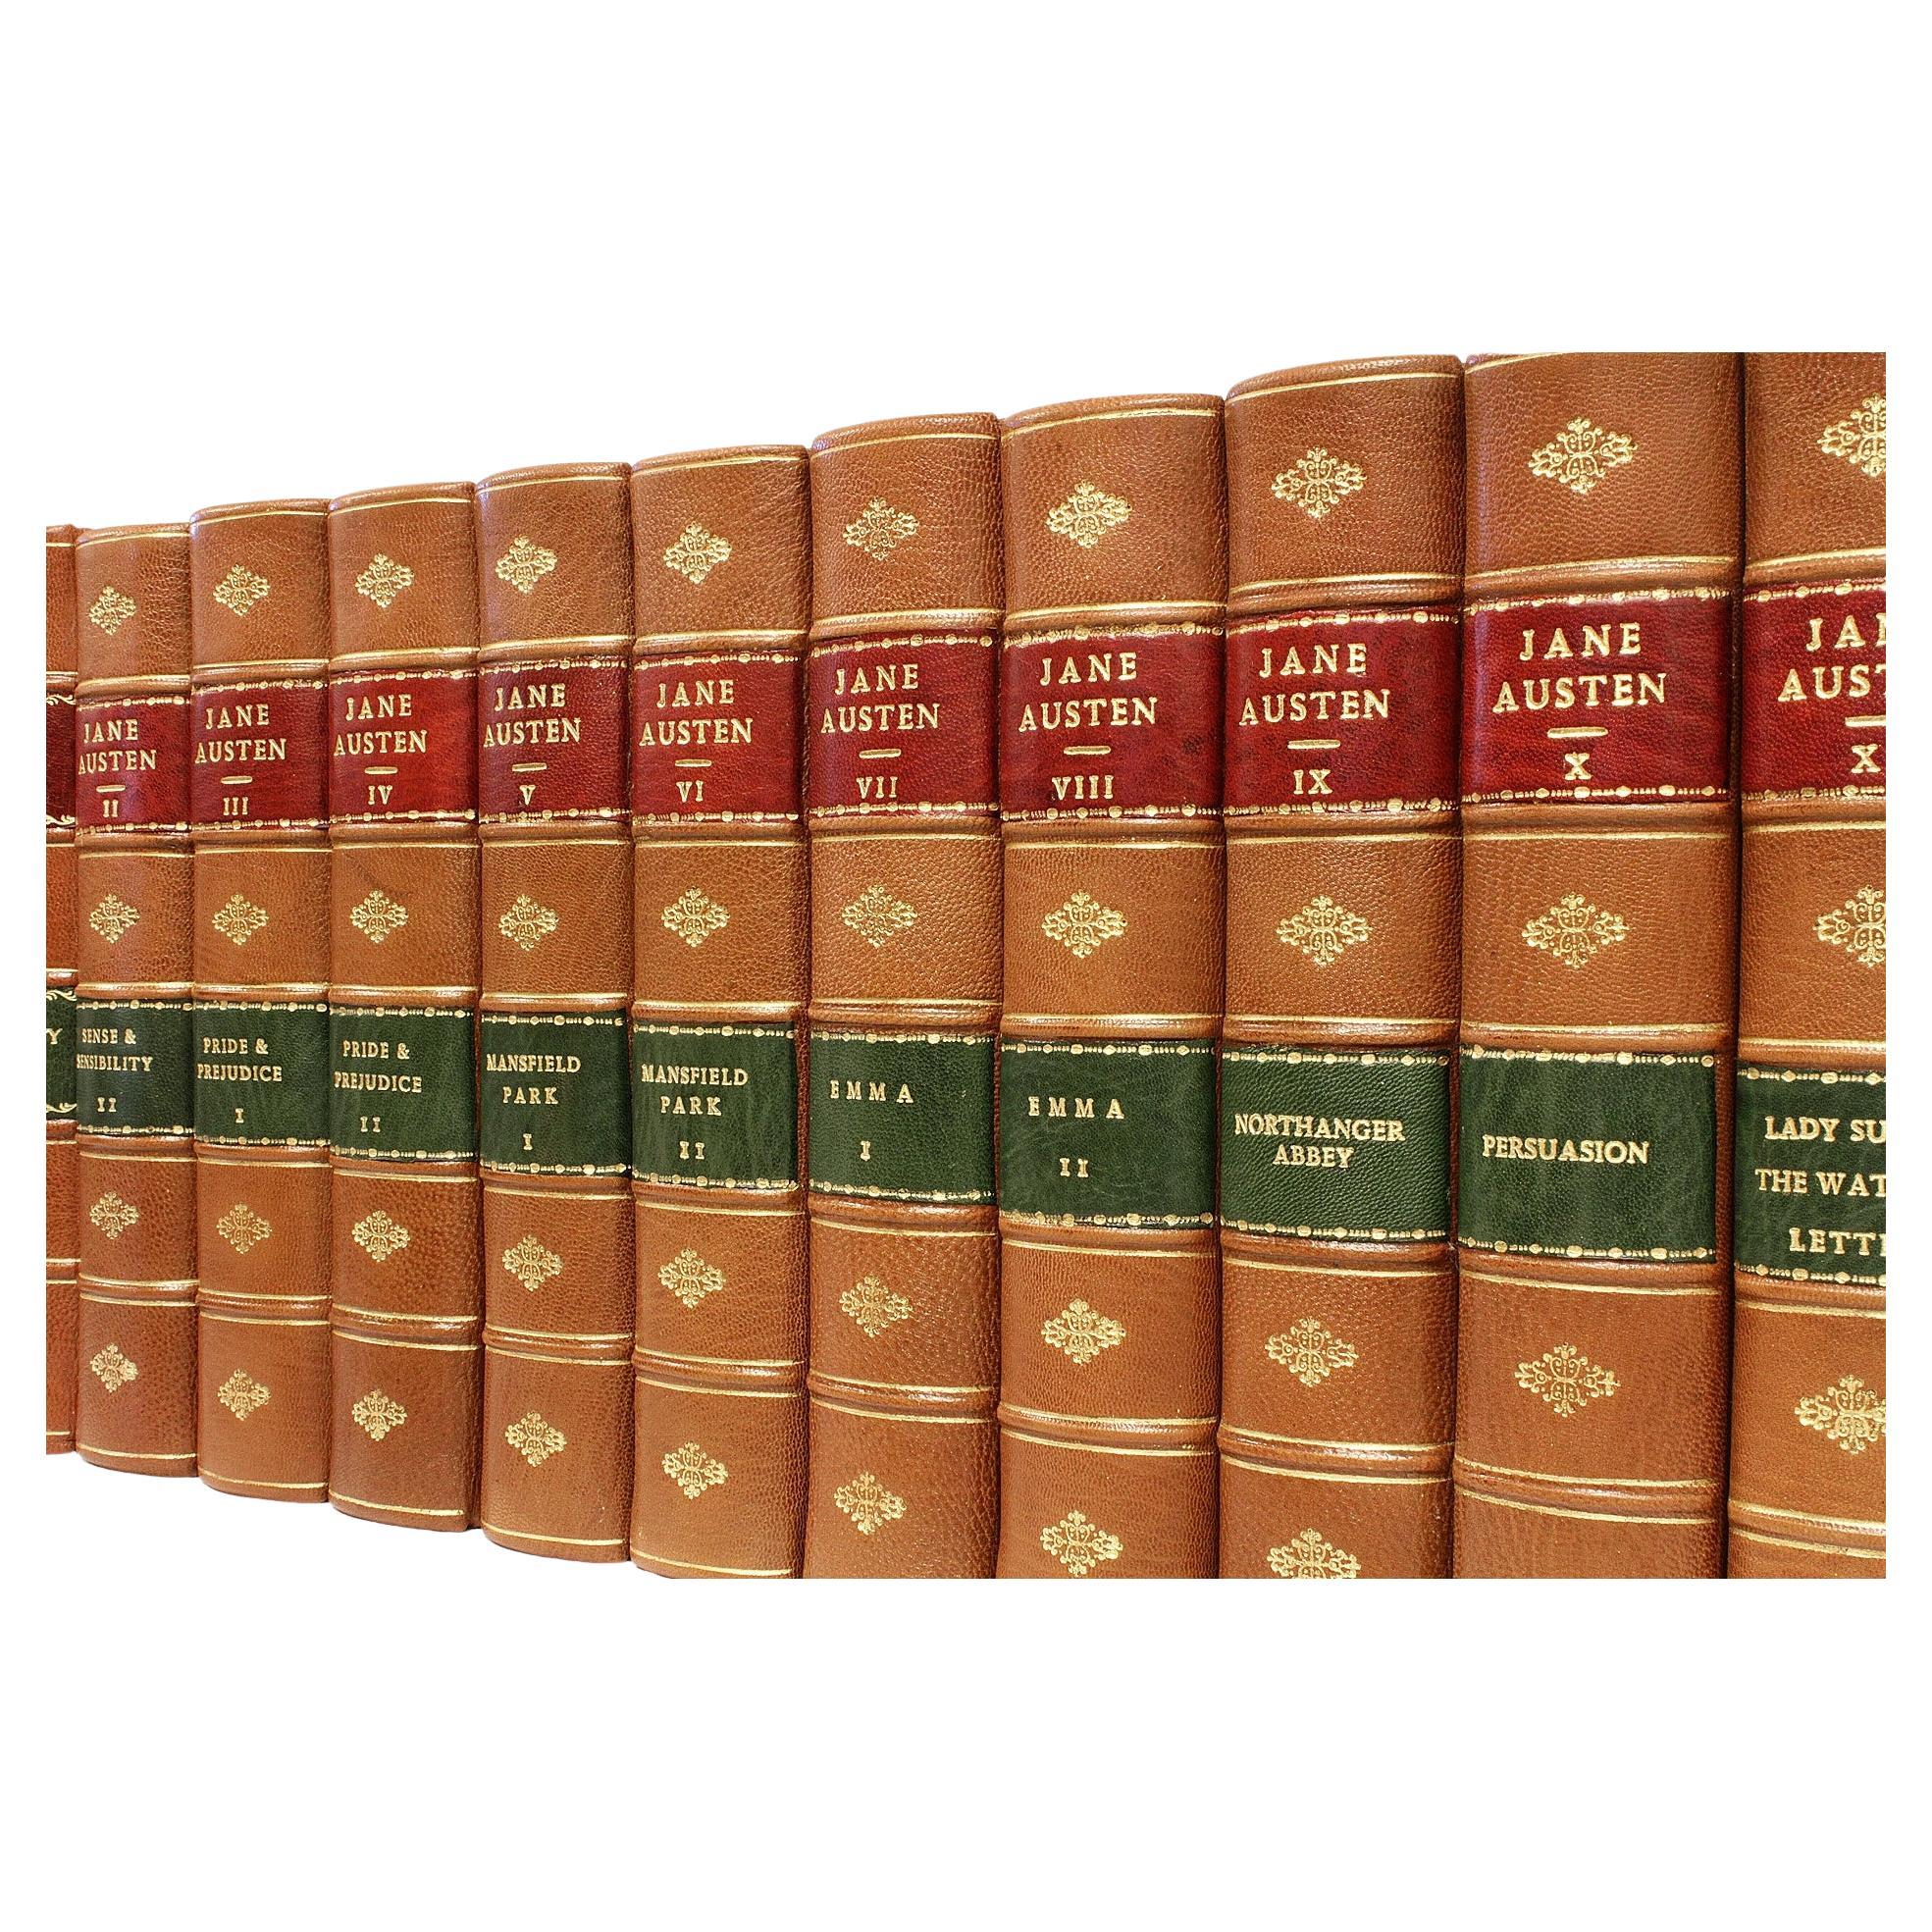 Author: AUSTEN, Jane. 

Title: The Novels (Works and Letters) of Jane Austen.

Publisher: Edinburgh: John Grant, 1911-12.

Description: The Winchester Edition. 12 vols., 8-1/2